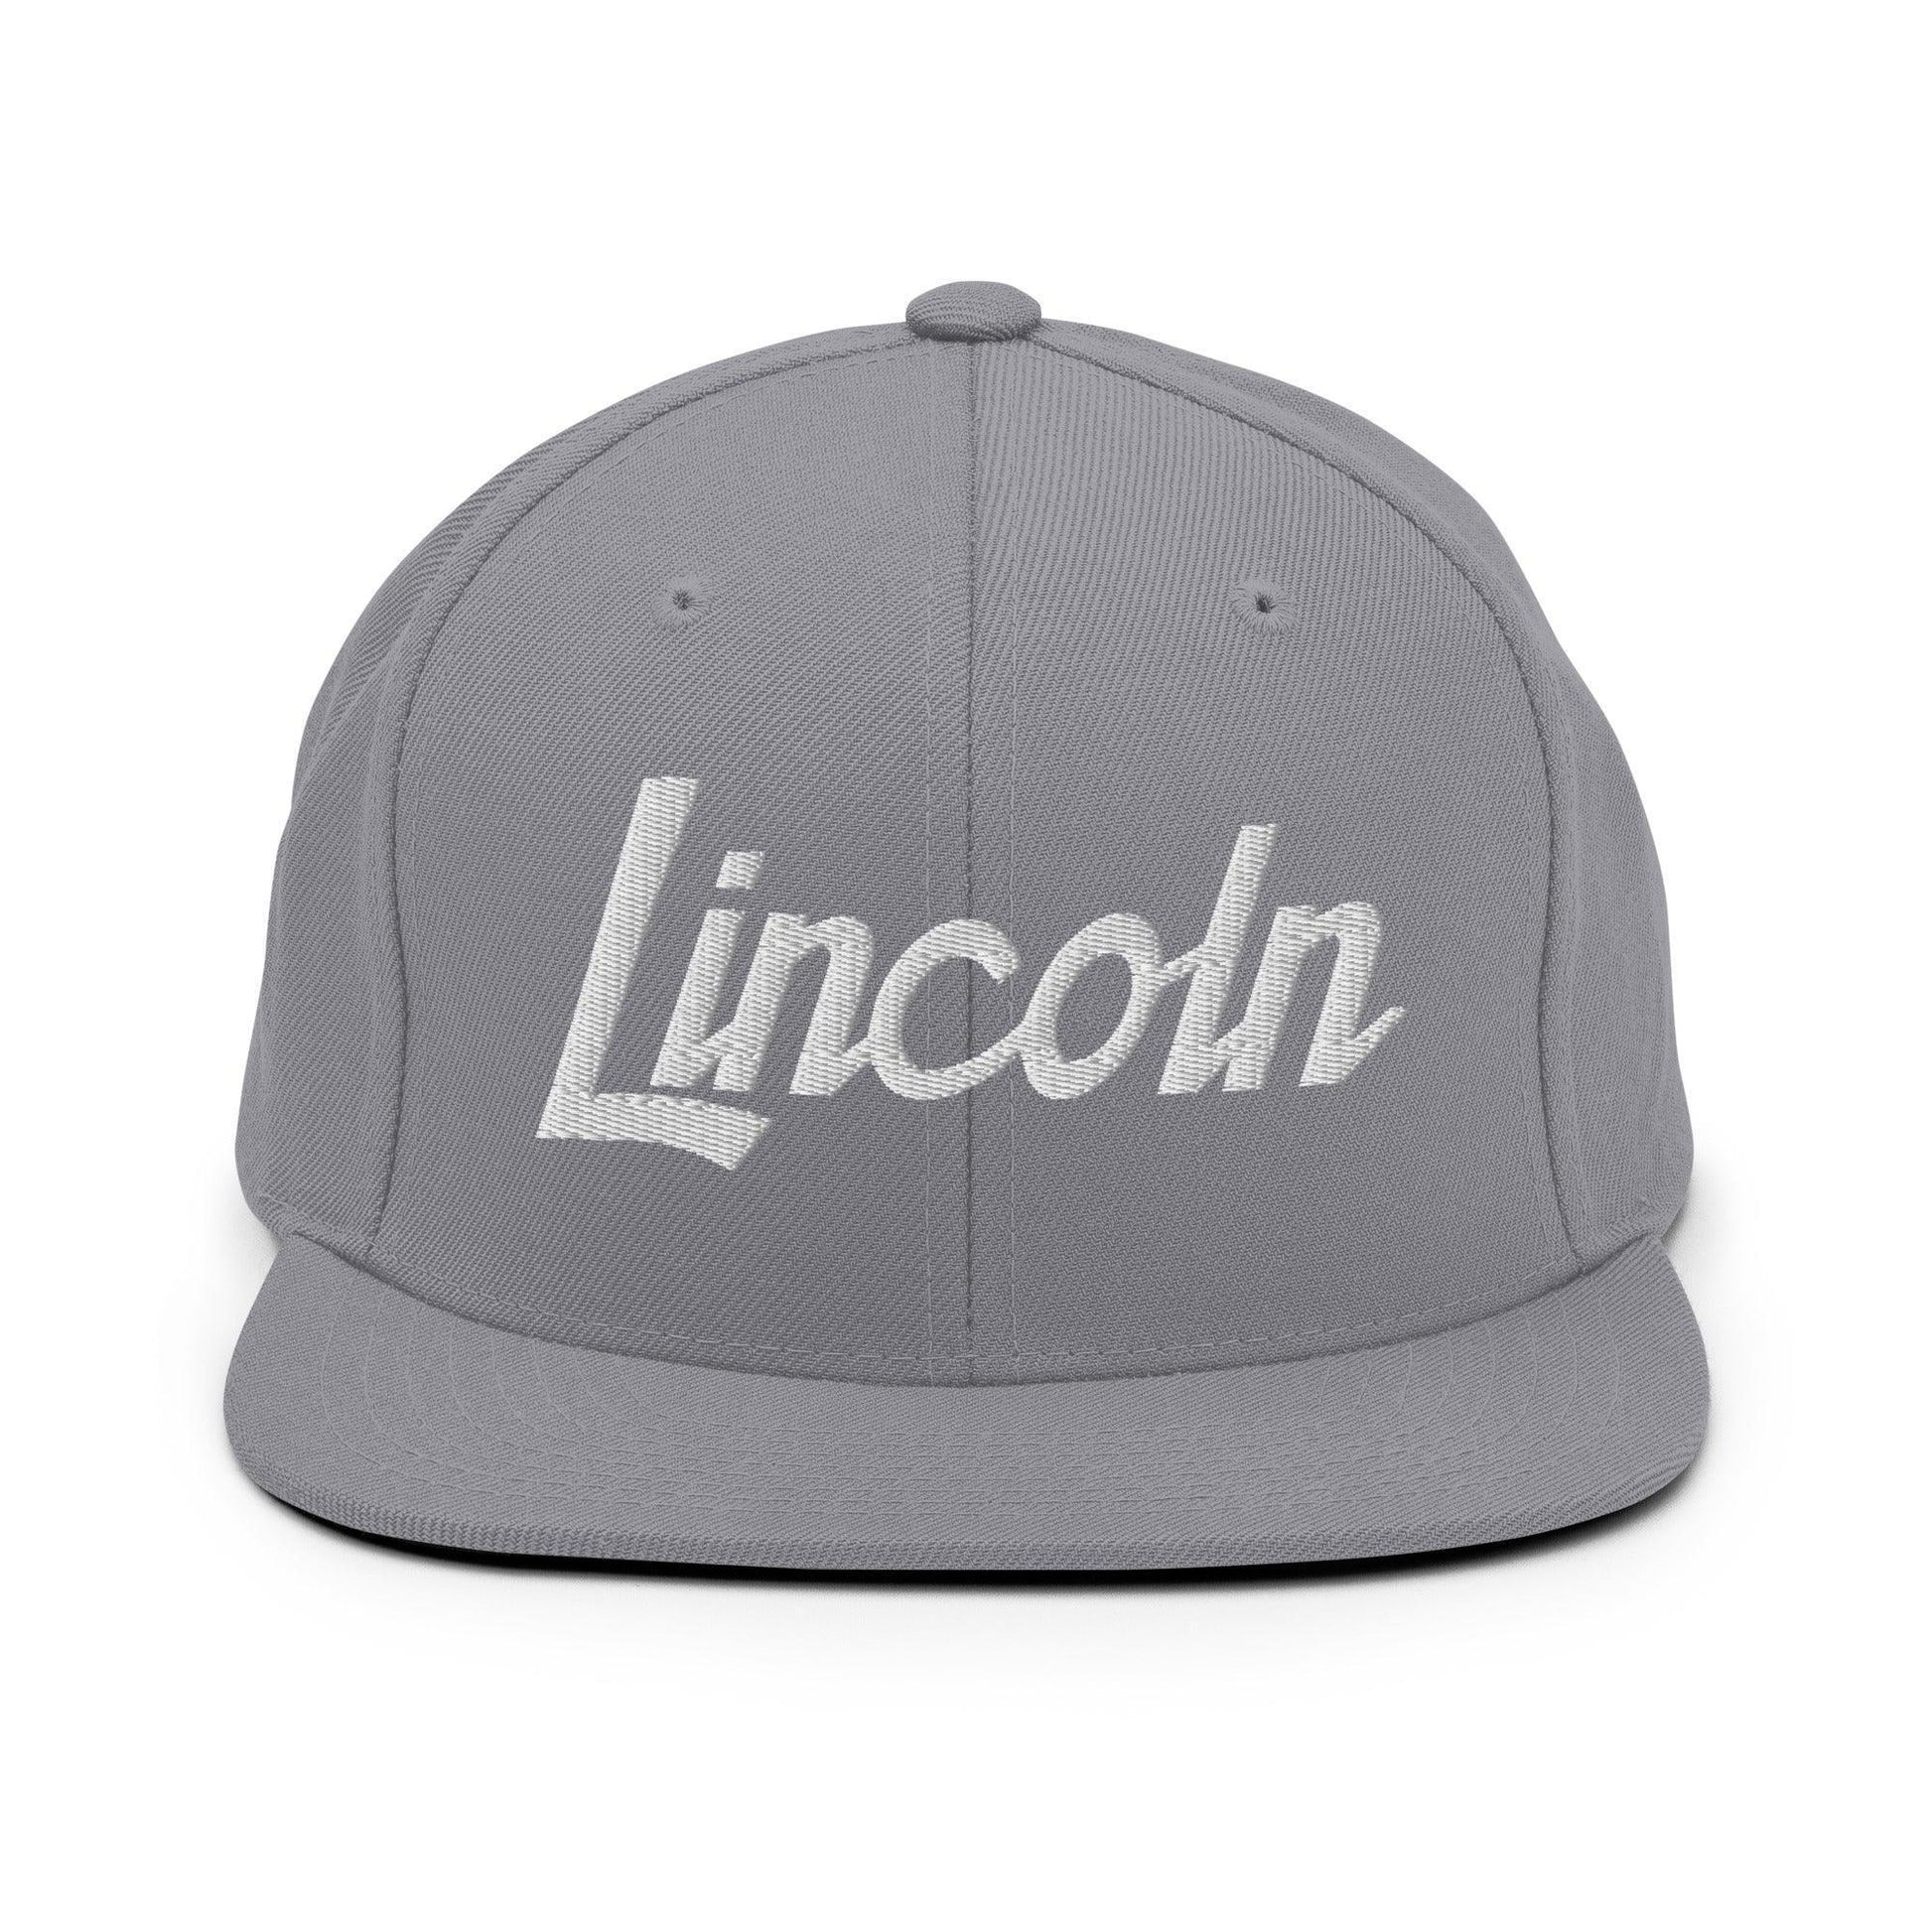 Lincoln Script Snapback Hat Silver